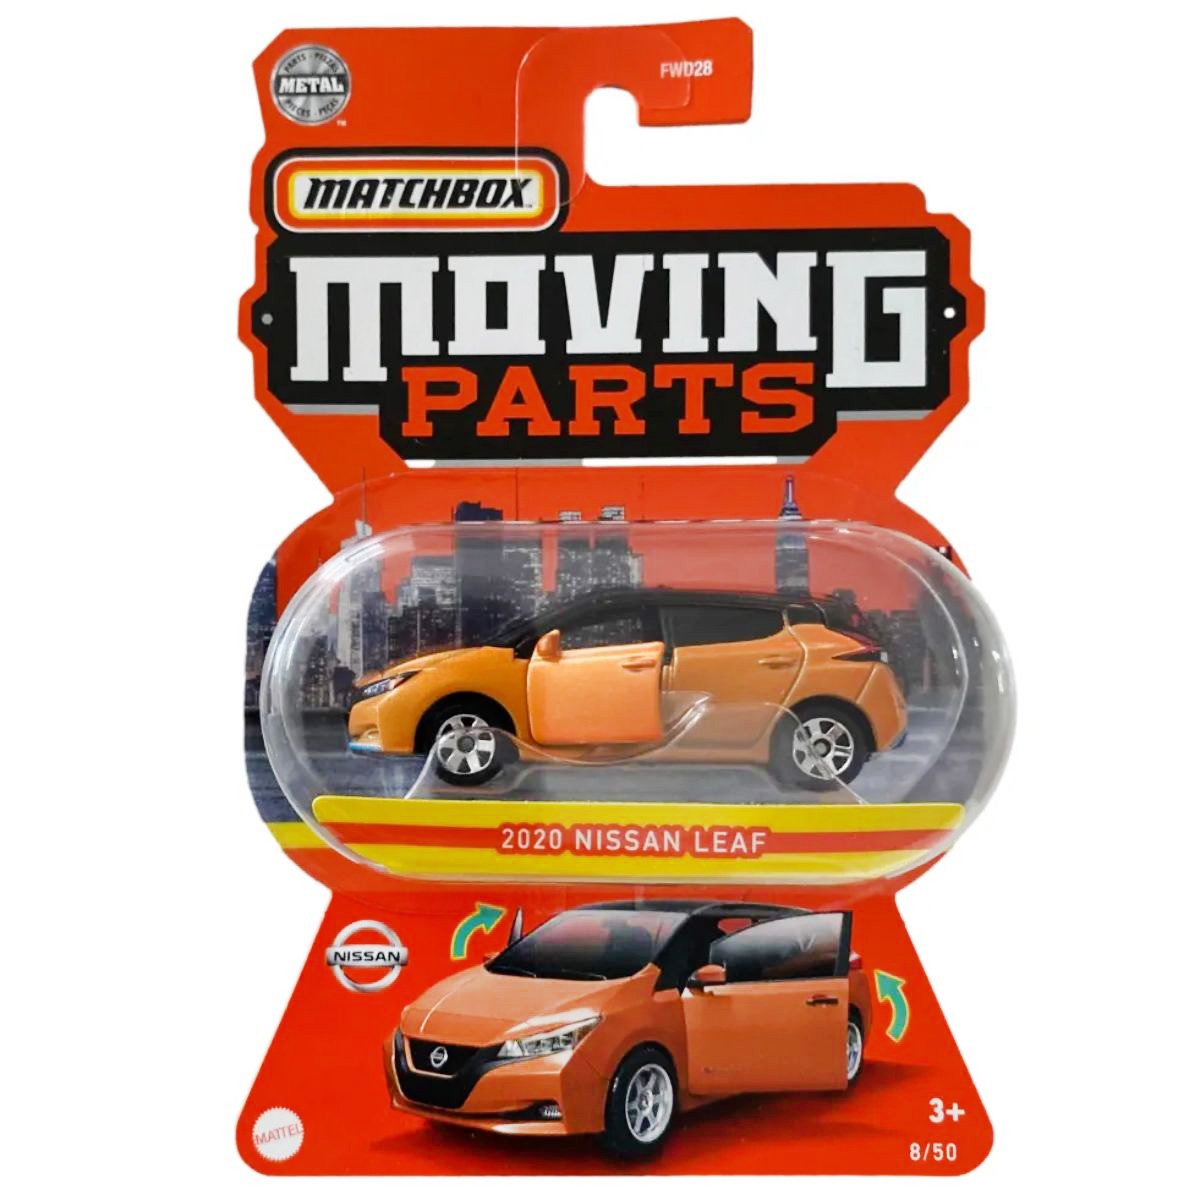 Masinuta Matchbox, Moving Parts, 2020 Nissan Leaf, 1:64, HLG10